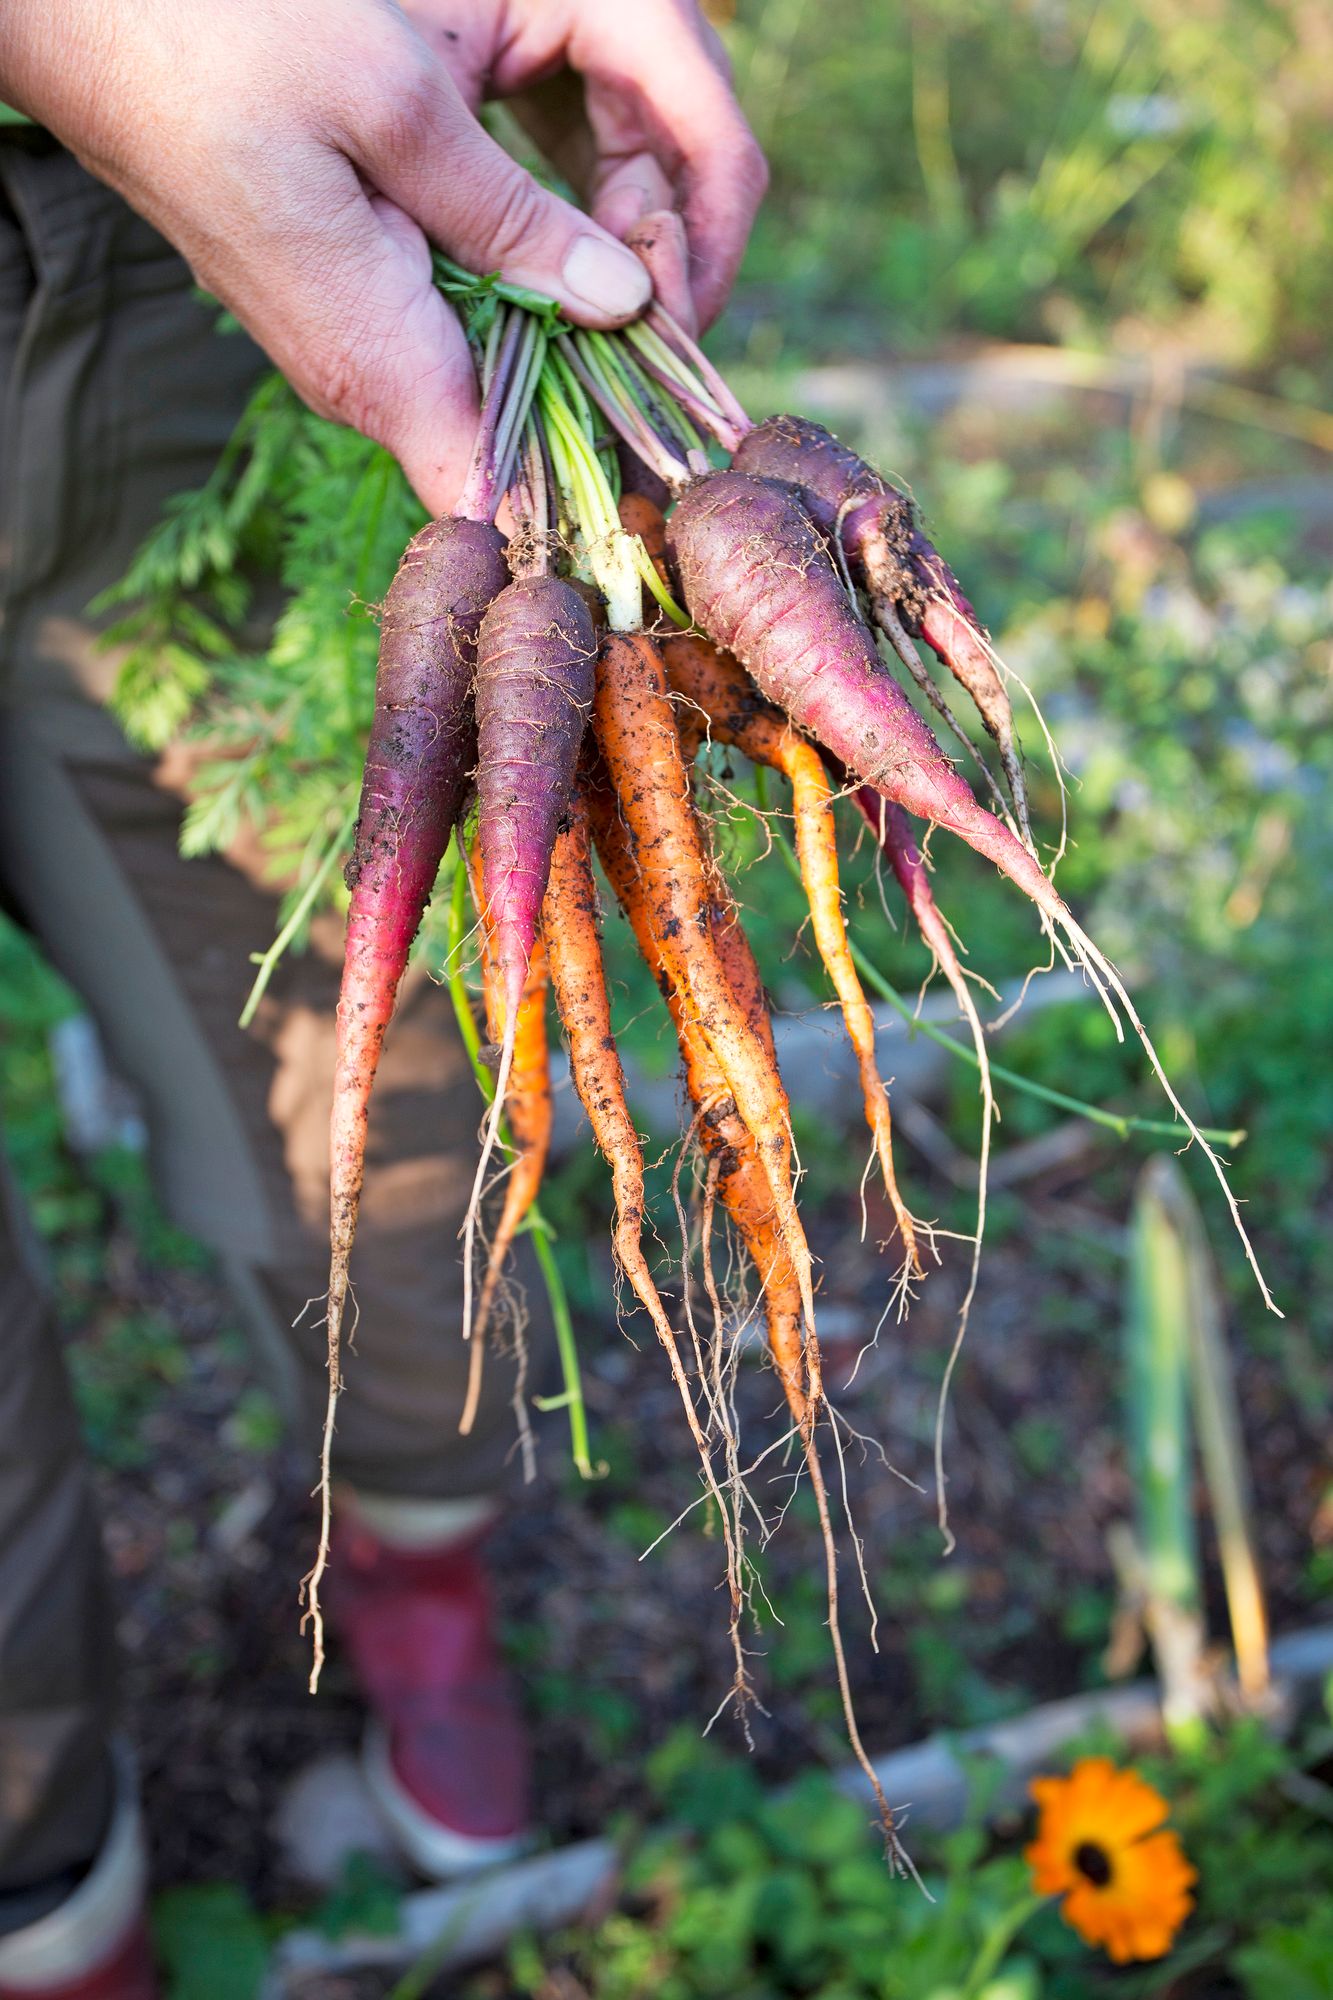 Kaikki violetit porkkanat eivät ole Jaanan mielestä makoisia, mutta 'Black Spanish' on. Sen vieressä on makea oranssi 'Sugarsnack'.  Porkkanat ja juurikkaat säilyvät paremmin, kun kierrät niiden naatit irti heti sadonkorjuun jälkeen. Parhaiten säilyvät kookkaat ja paksukuoriset talvilajikkeet. 